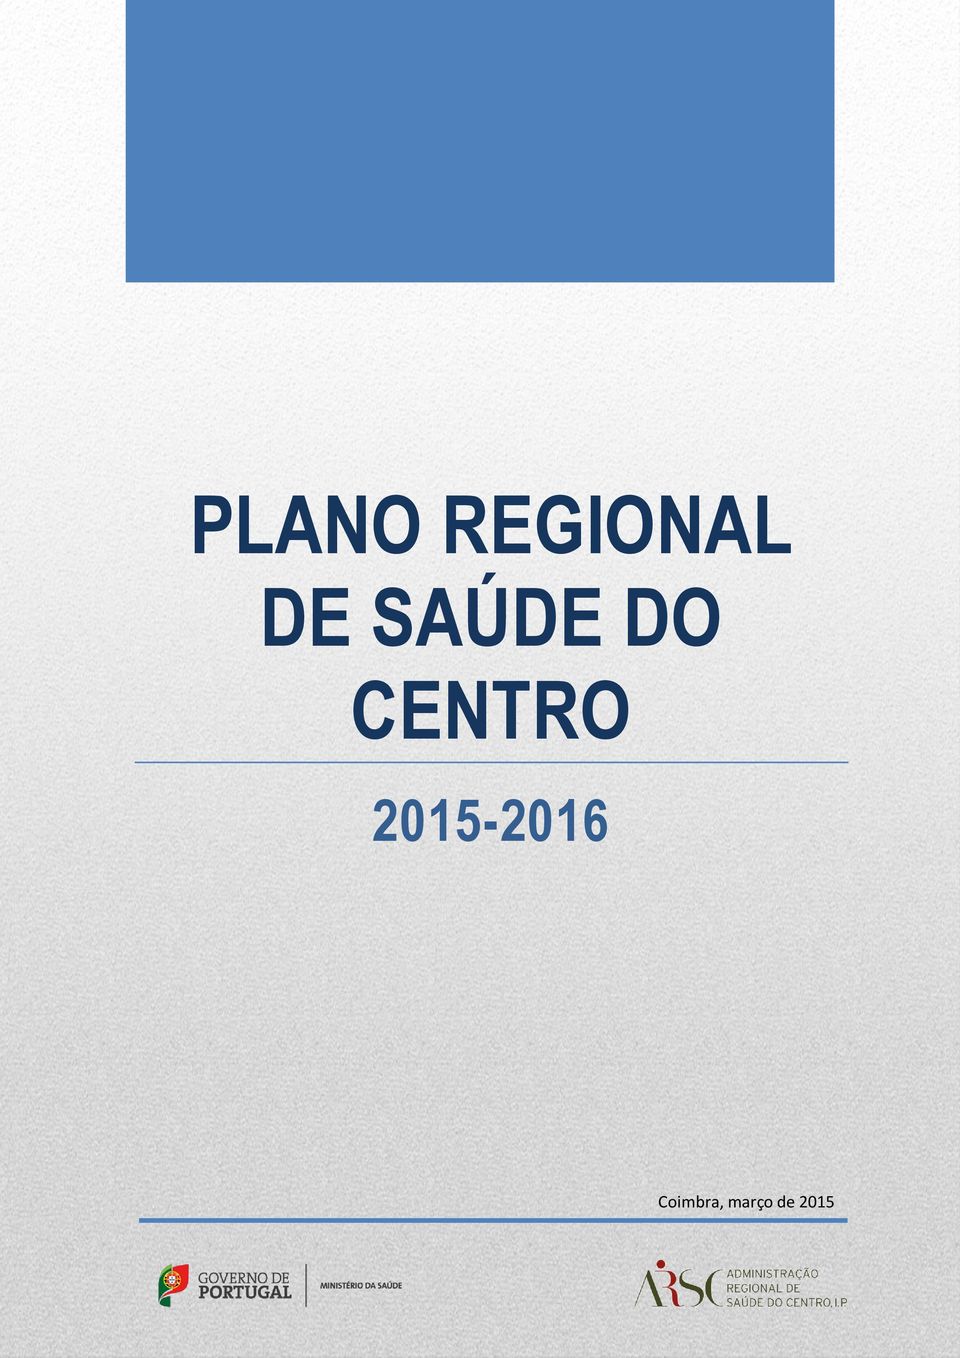 CENTRO 2015-2016